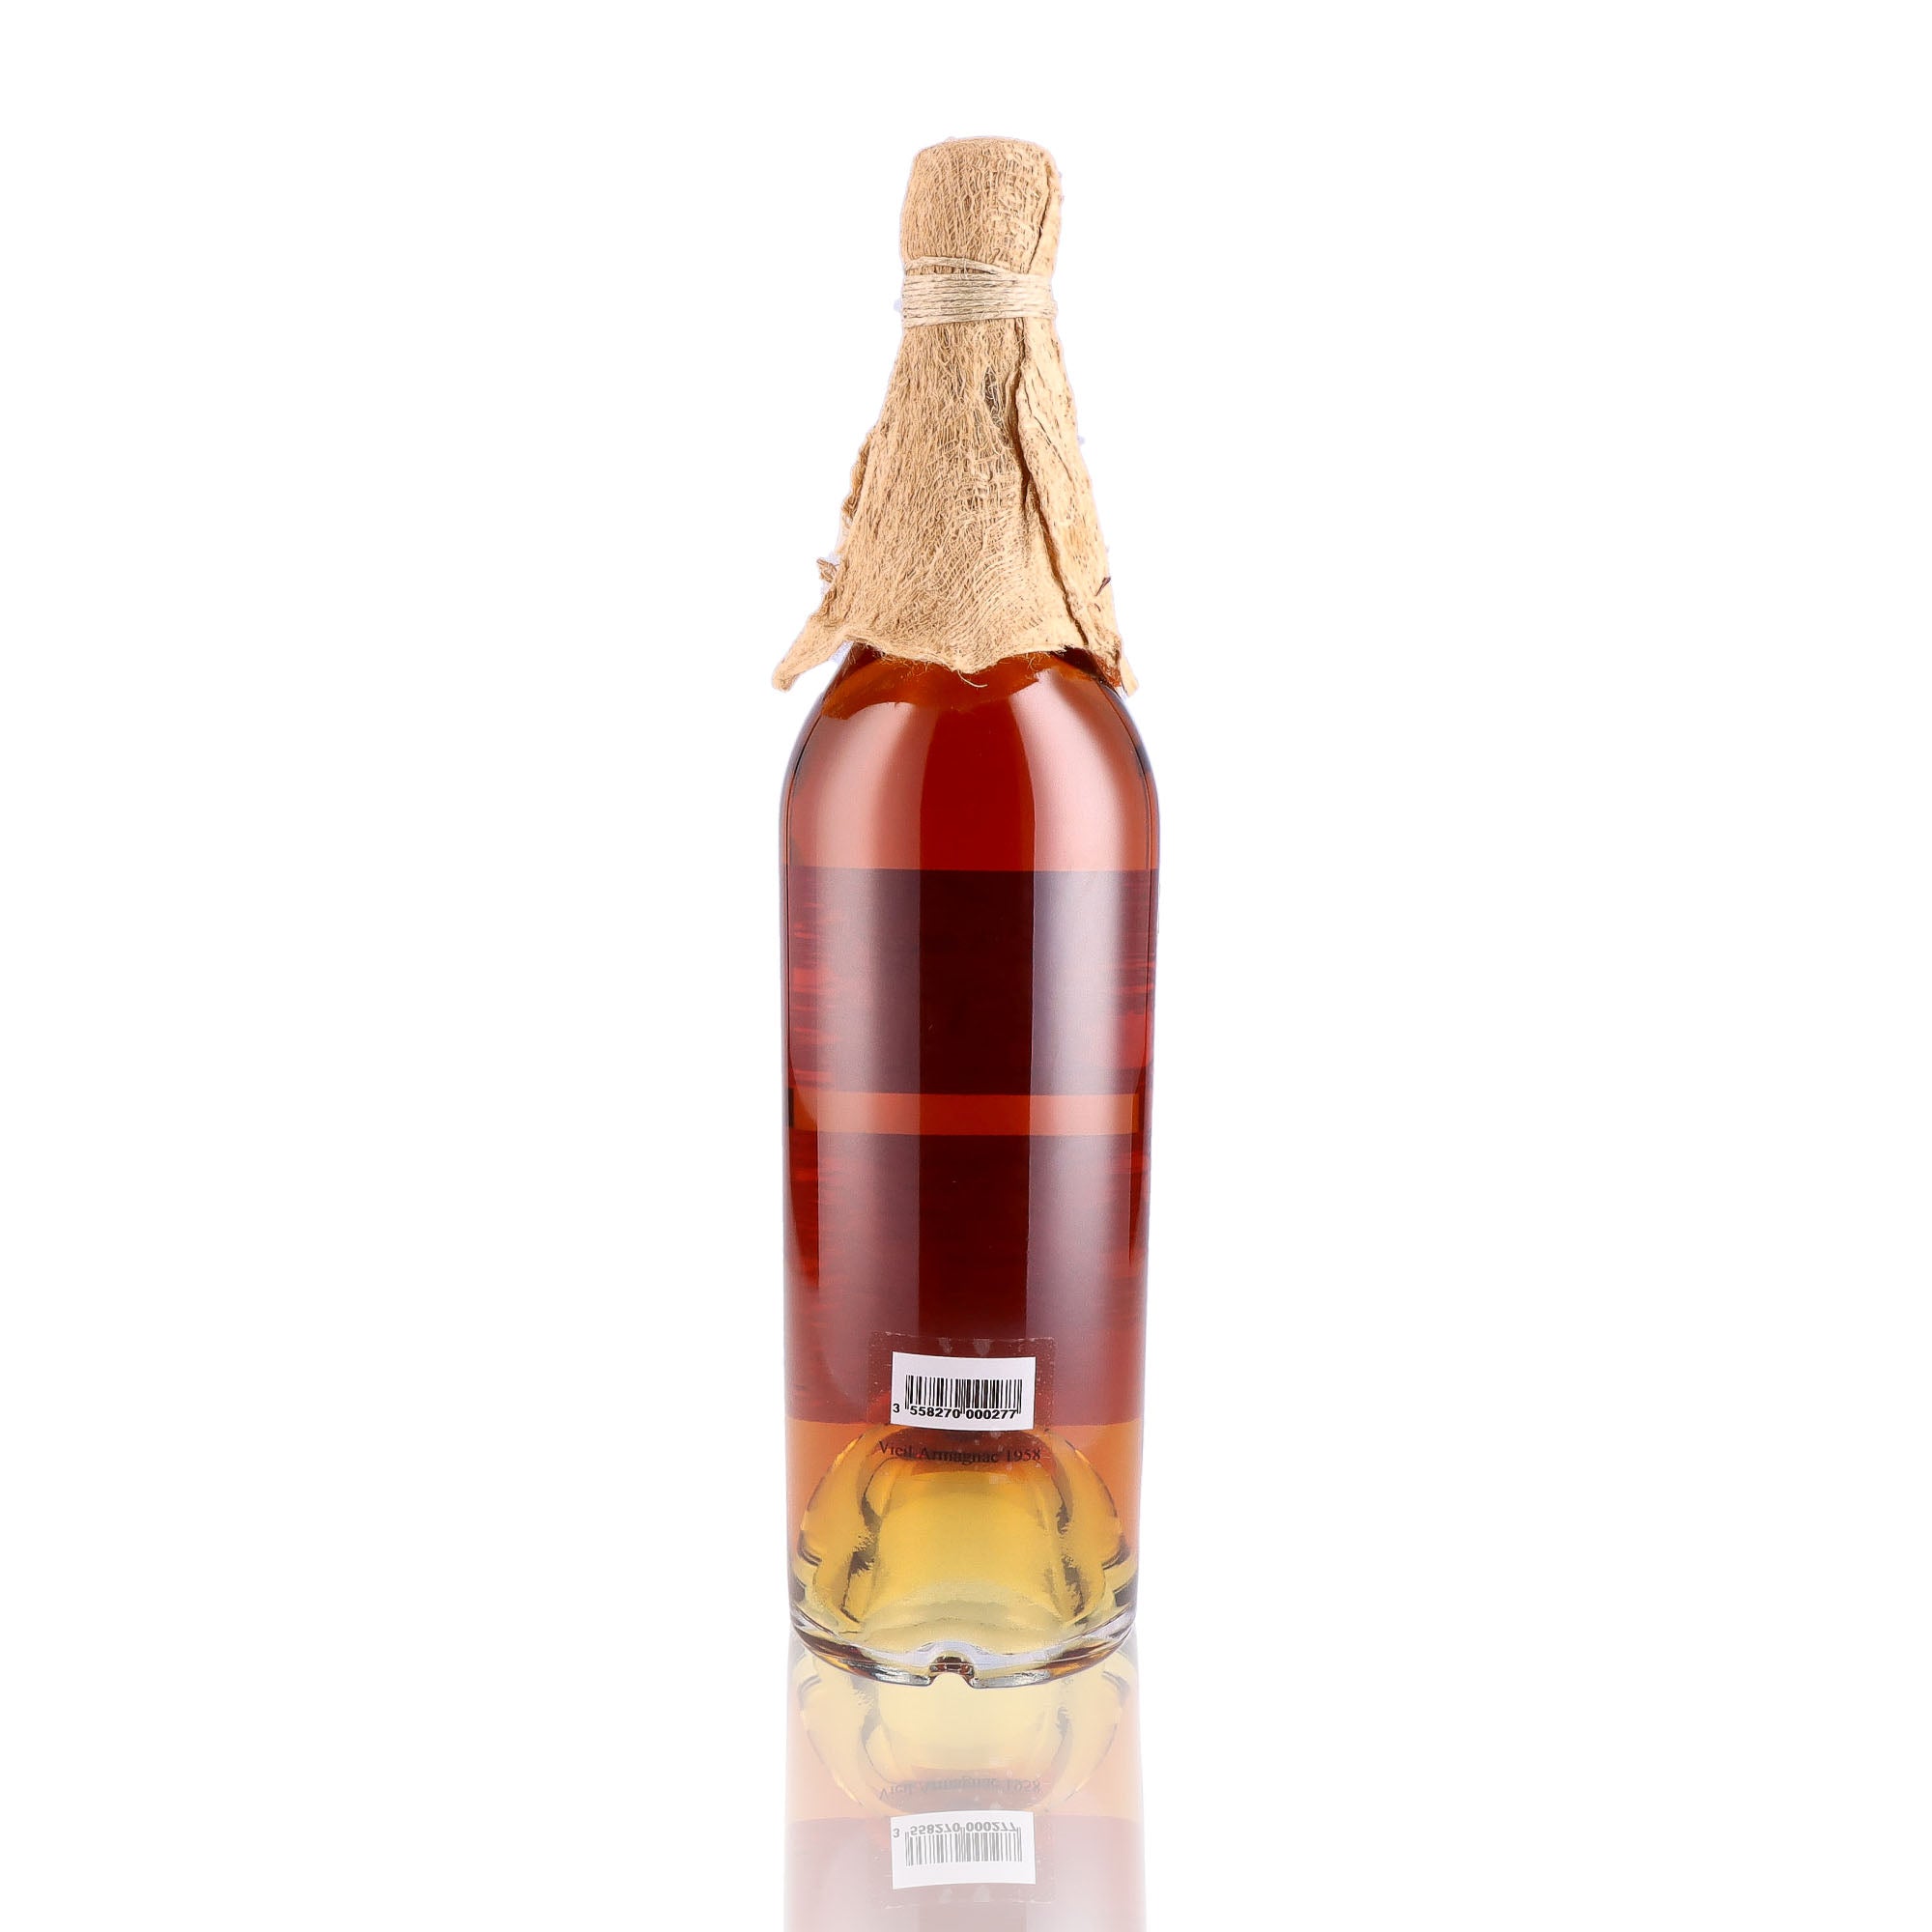 Une bouteille de Vieil Armagnac, de la marque Baron Gaston Legrand, du millésime 1958.